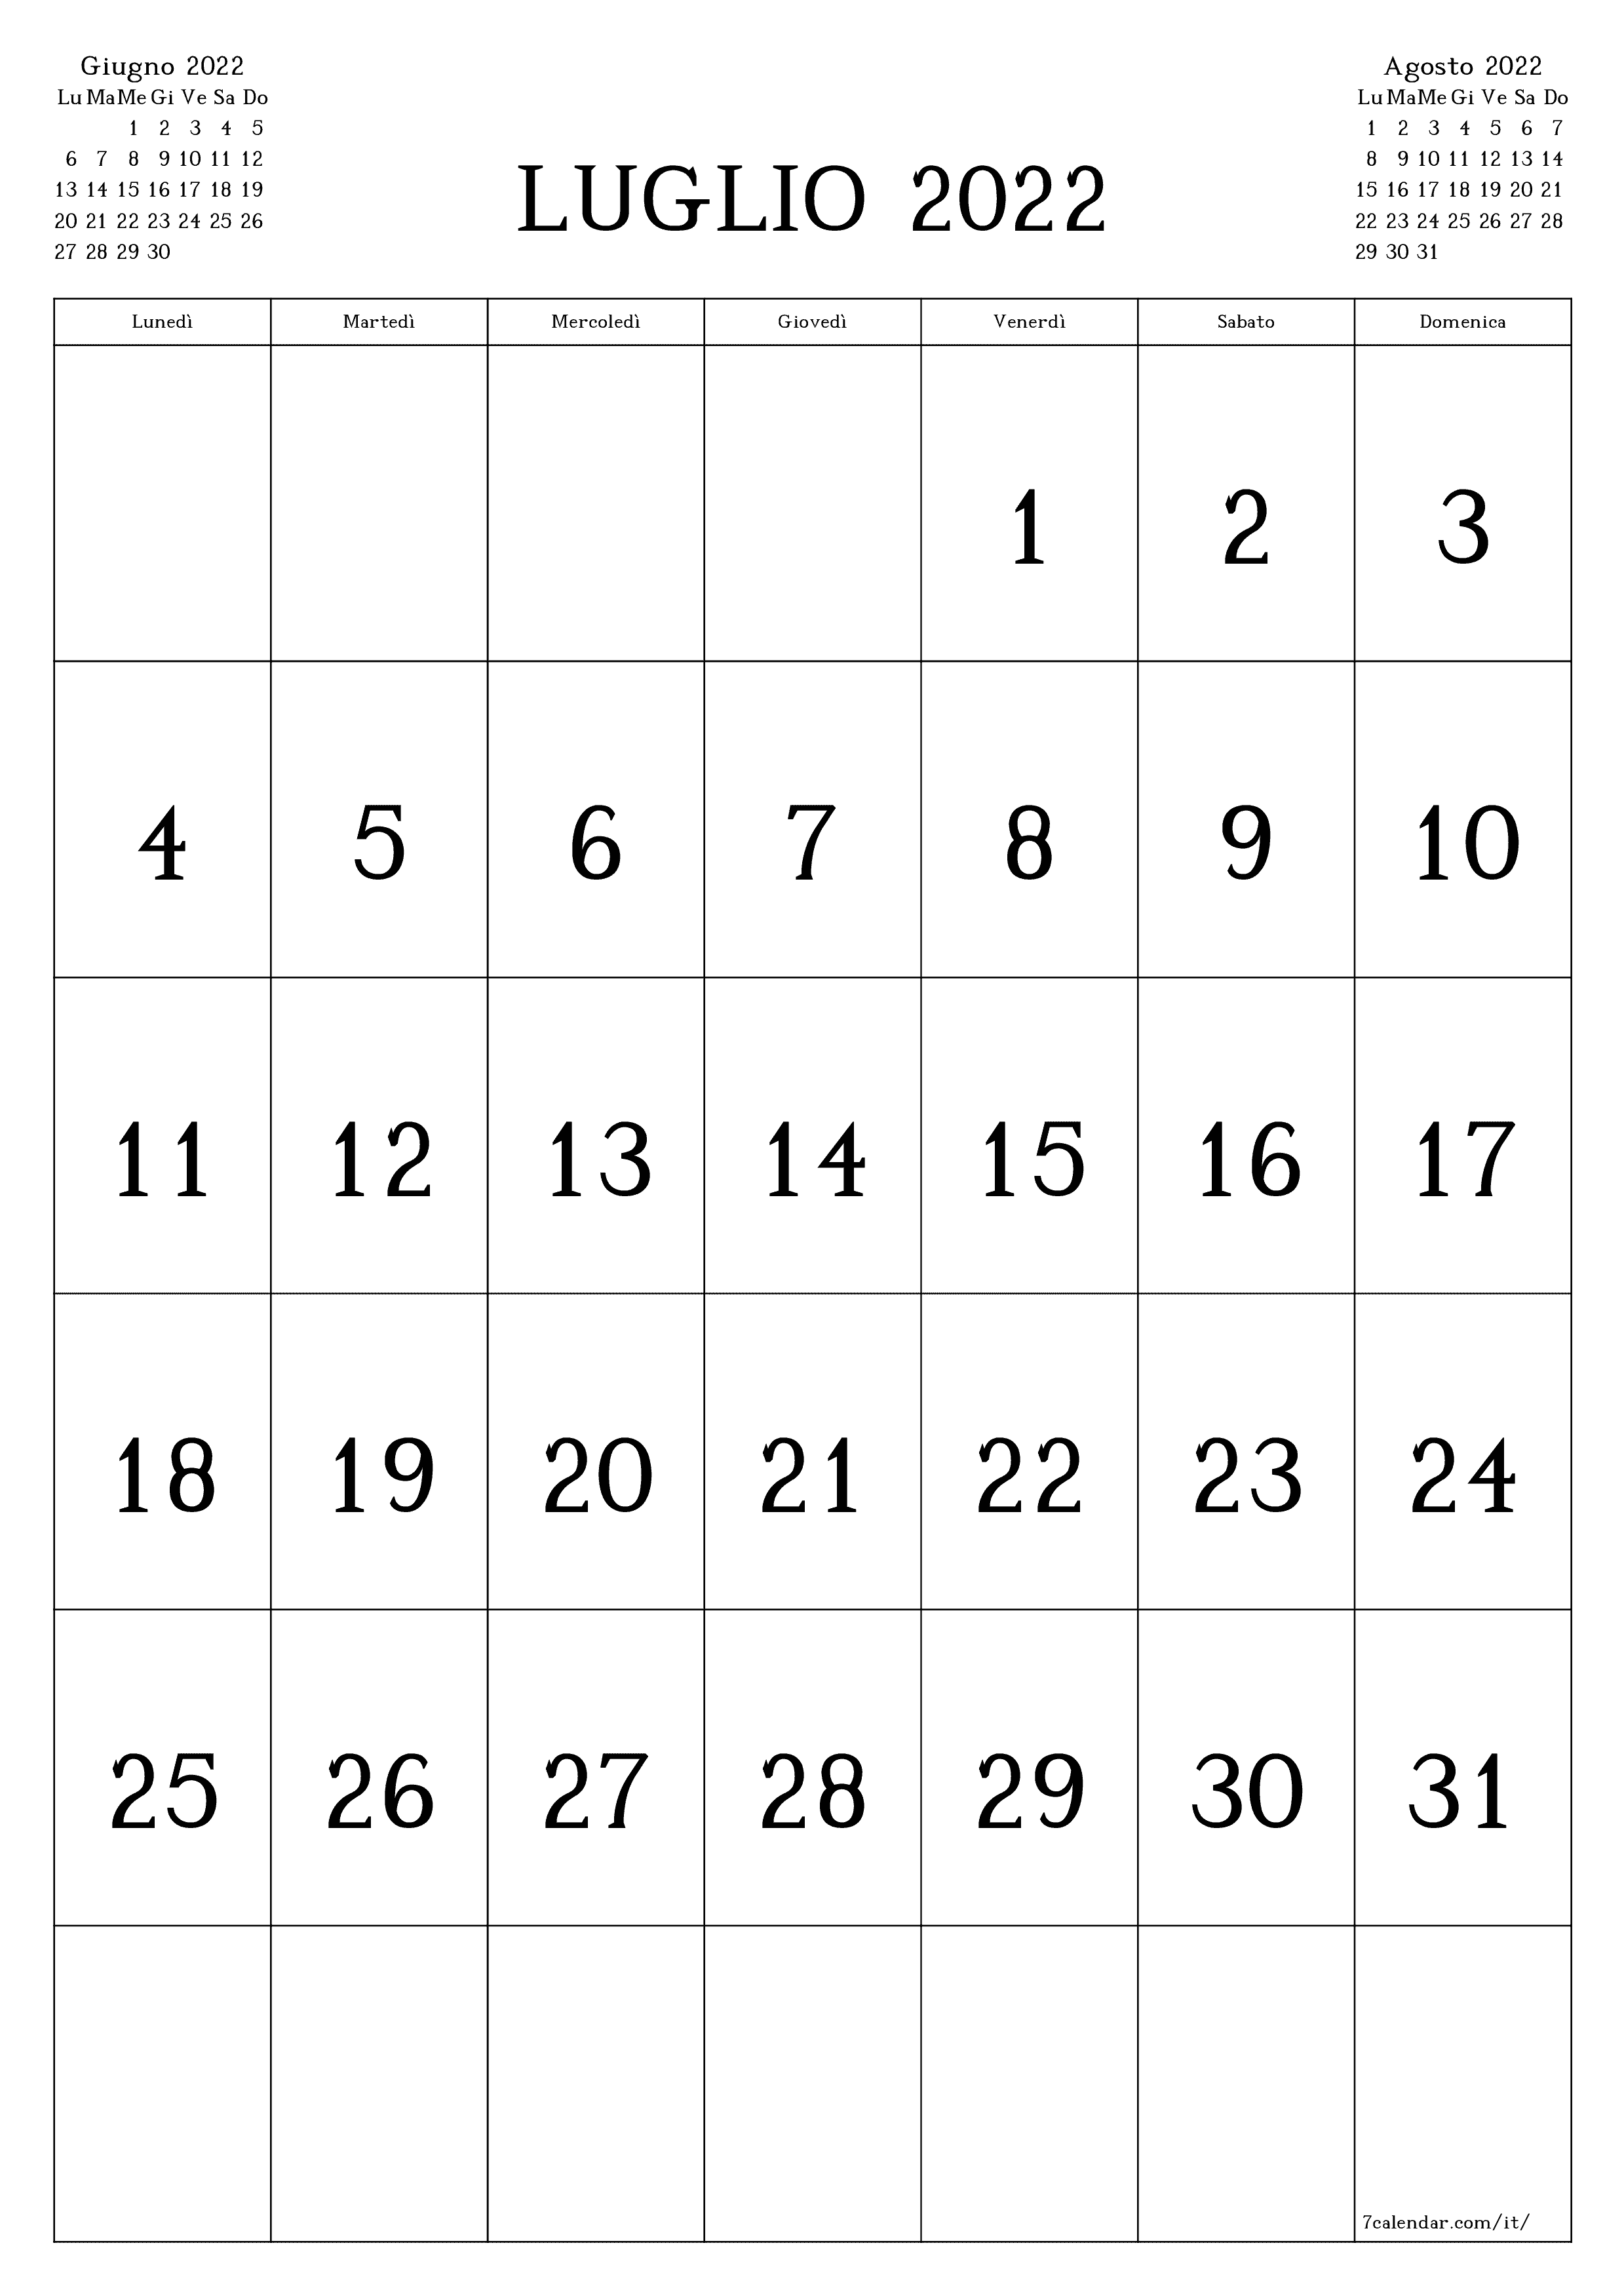 Calendario mensile vuoto per il mese Luglio 2022 salva e stampa in PDF PNG Italian - 7calendar.com